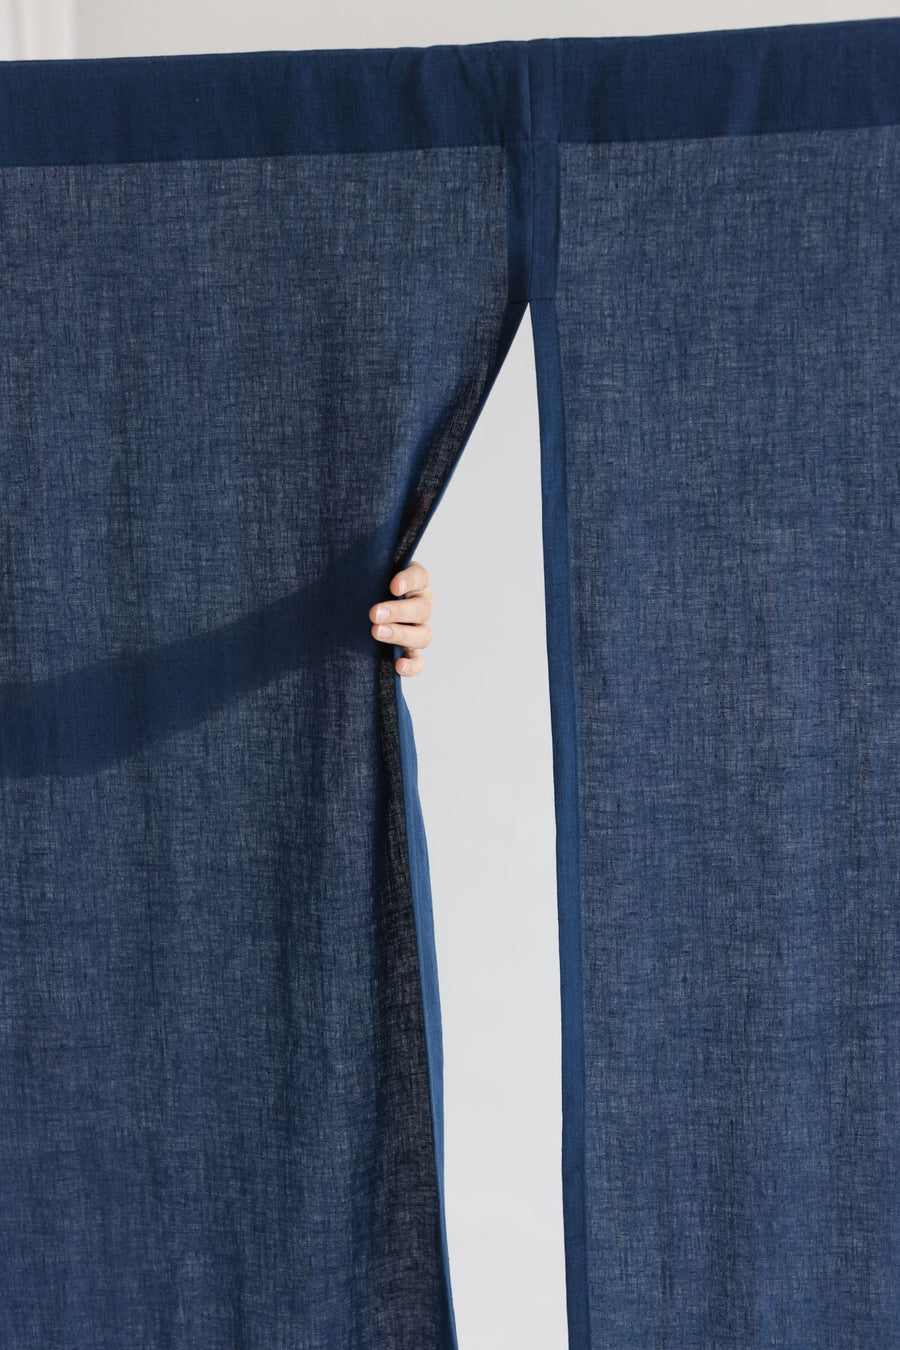 Steel Blue Linen Japanese Noren Curtain